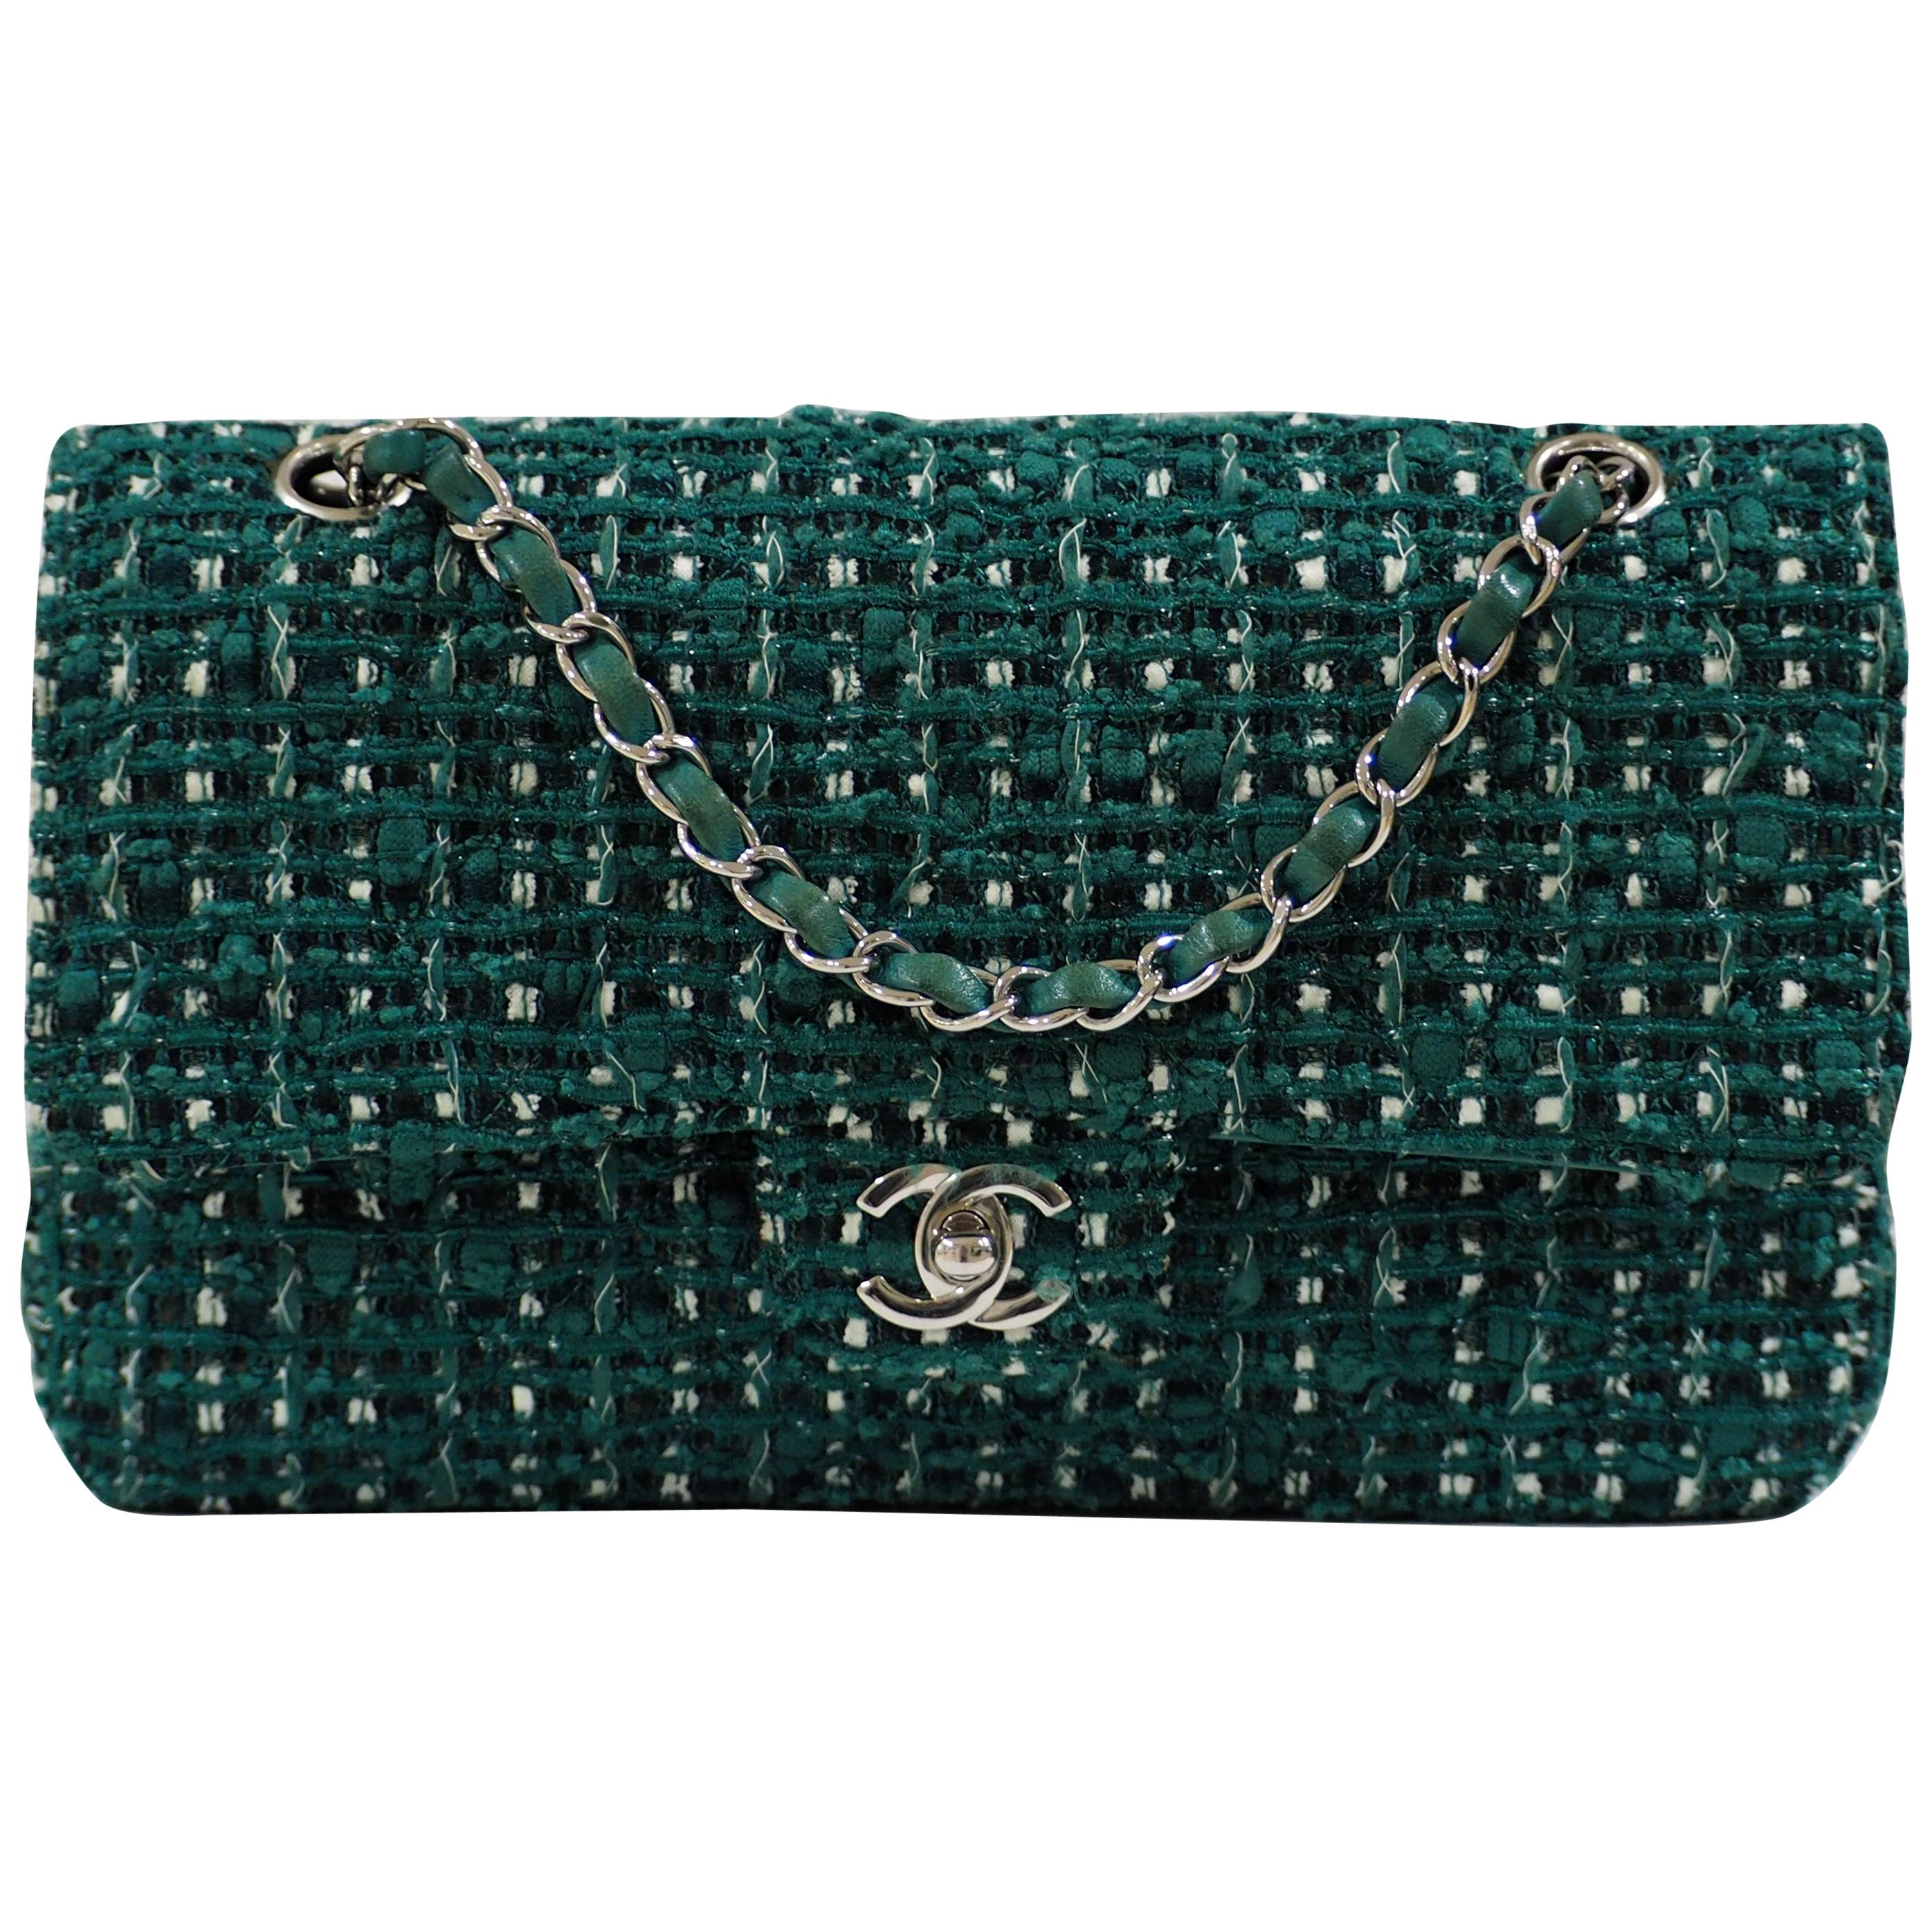 Chanel 2.55 green tweed shoulder bag